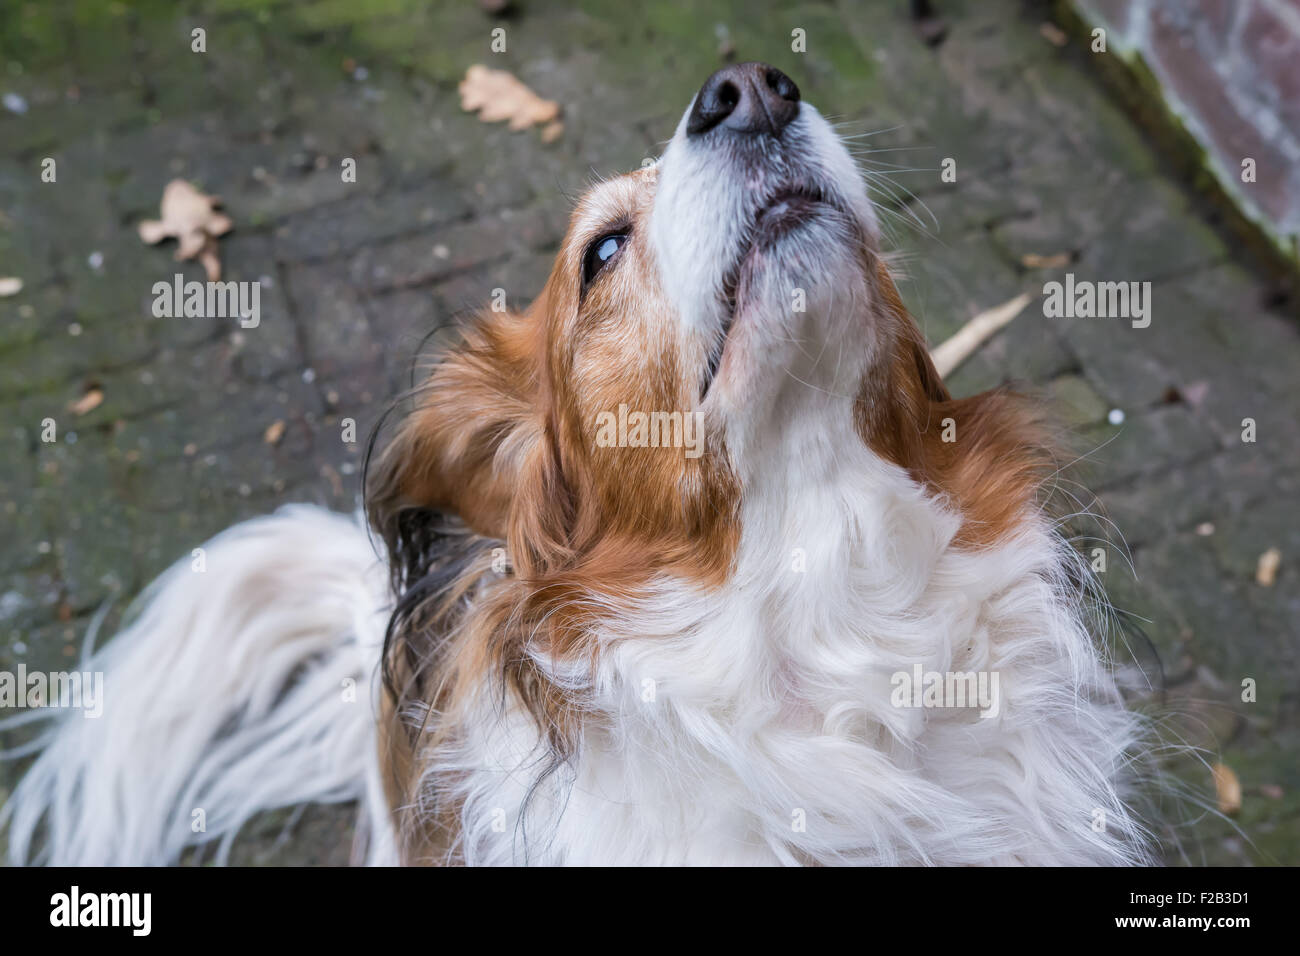 Cane in posa con la sua testa in aria Foto Stock